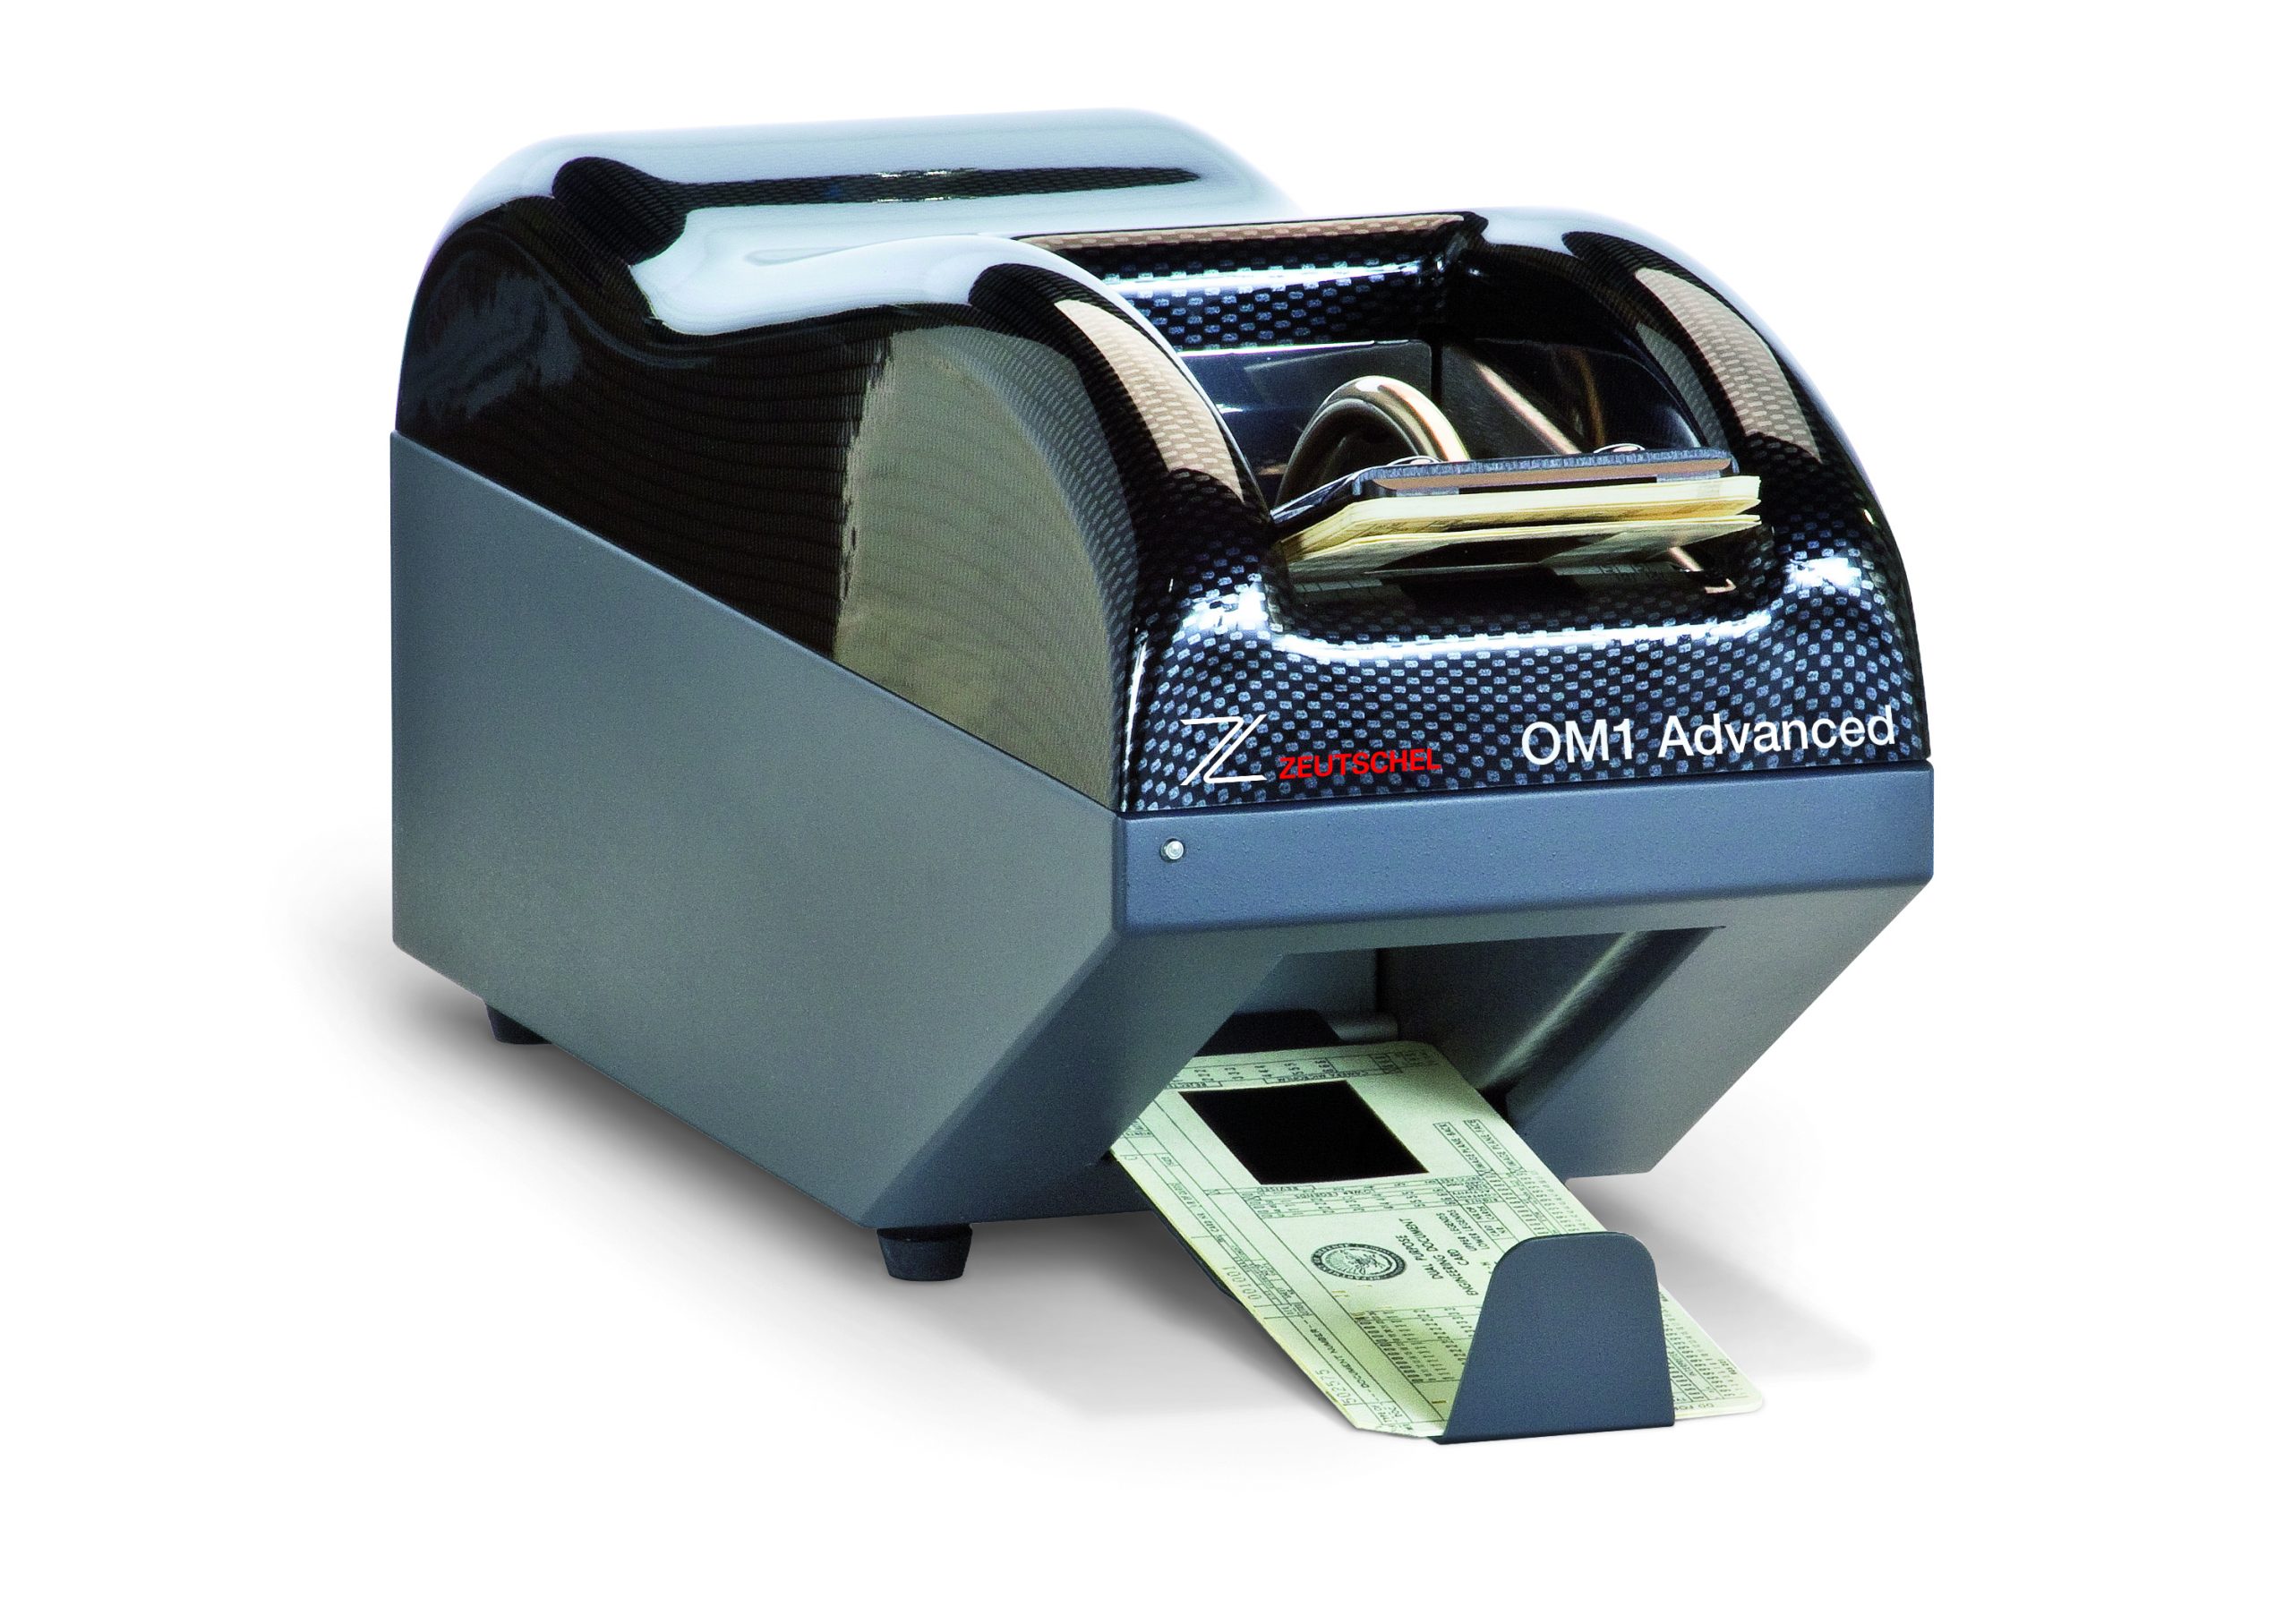 Mikrofilmkartenscanner OM 1 Advanced